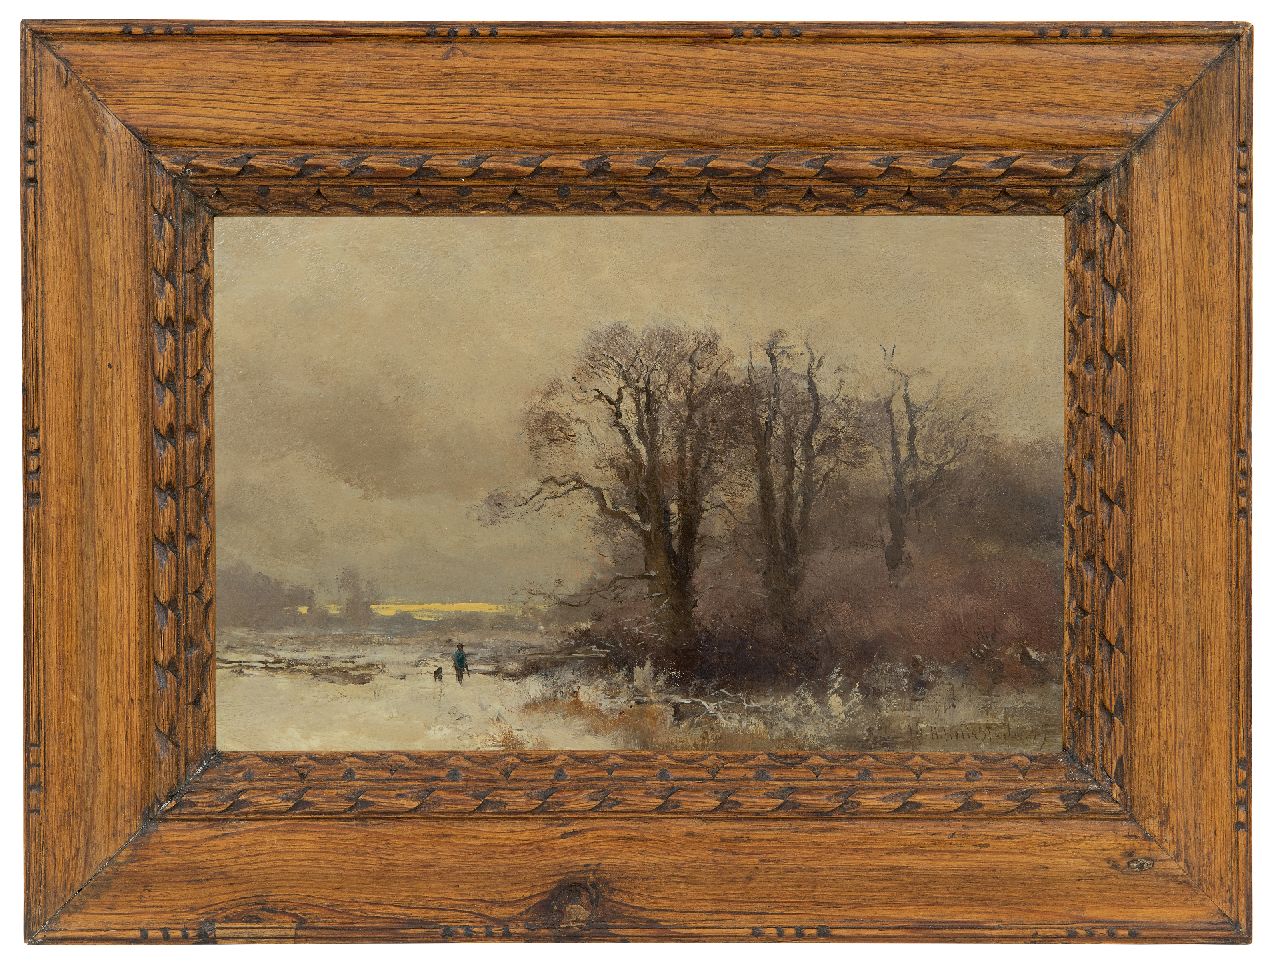 Hollestelle J.H.  | Jacob Huijbrecht Hollestelle | Schilderijen te koop aangeboden | Jager en zijn hond in een sneeuwlandschap, olieverf op paneel 20,5 x 31,6 cm, gesigneerd rechtsonder en gedateerd '99